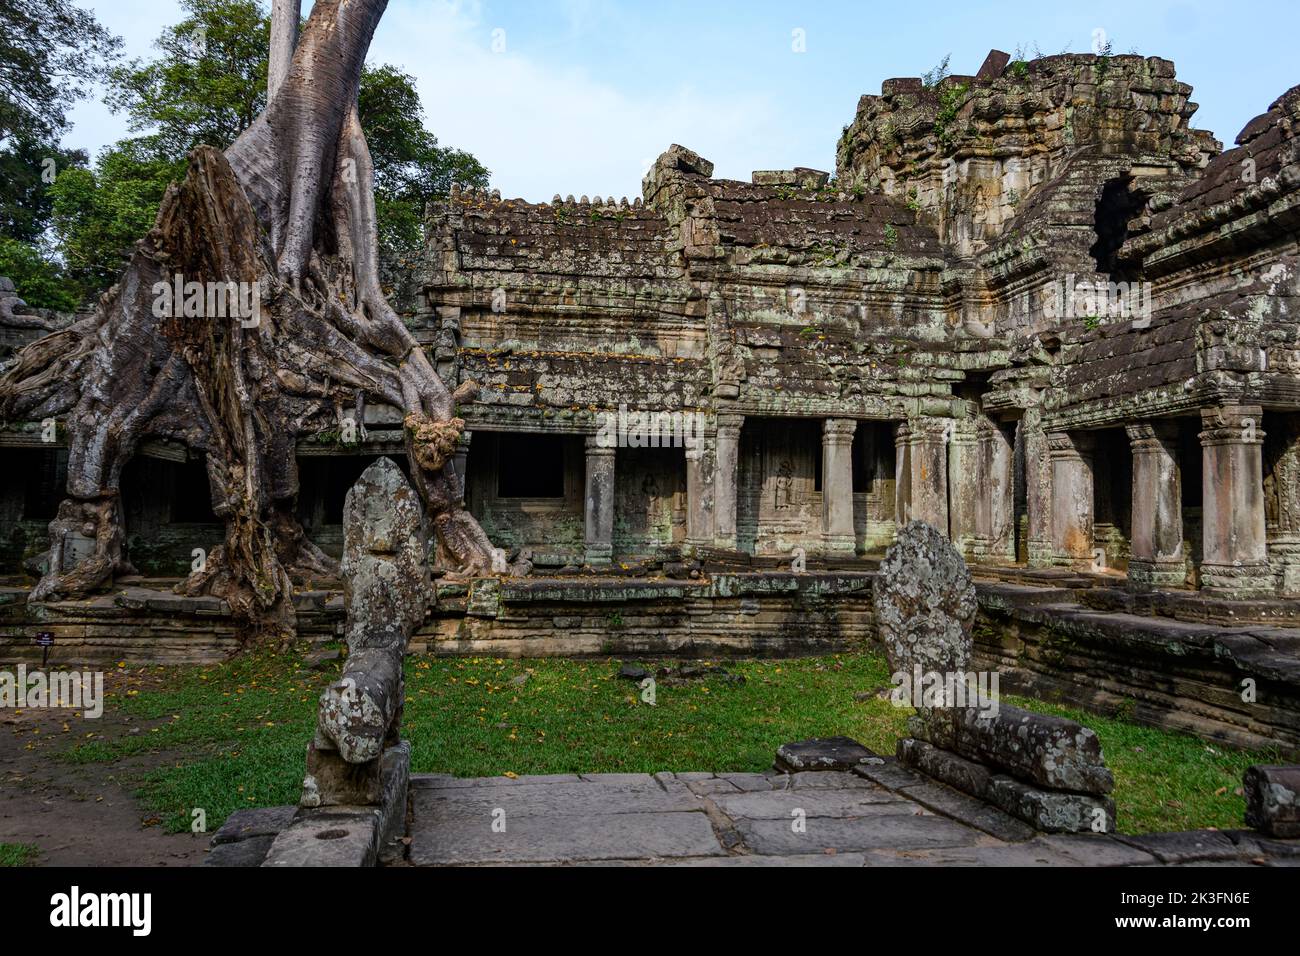 Cambodge. Siem Reap. Le parc archéologique d'Angkor. Arbre de la racine de banyan Tree surpoussant des parties de l'ancien temple hindou du 12th siècle de Preah Khan Banque D'Images